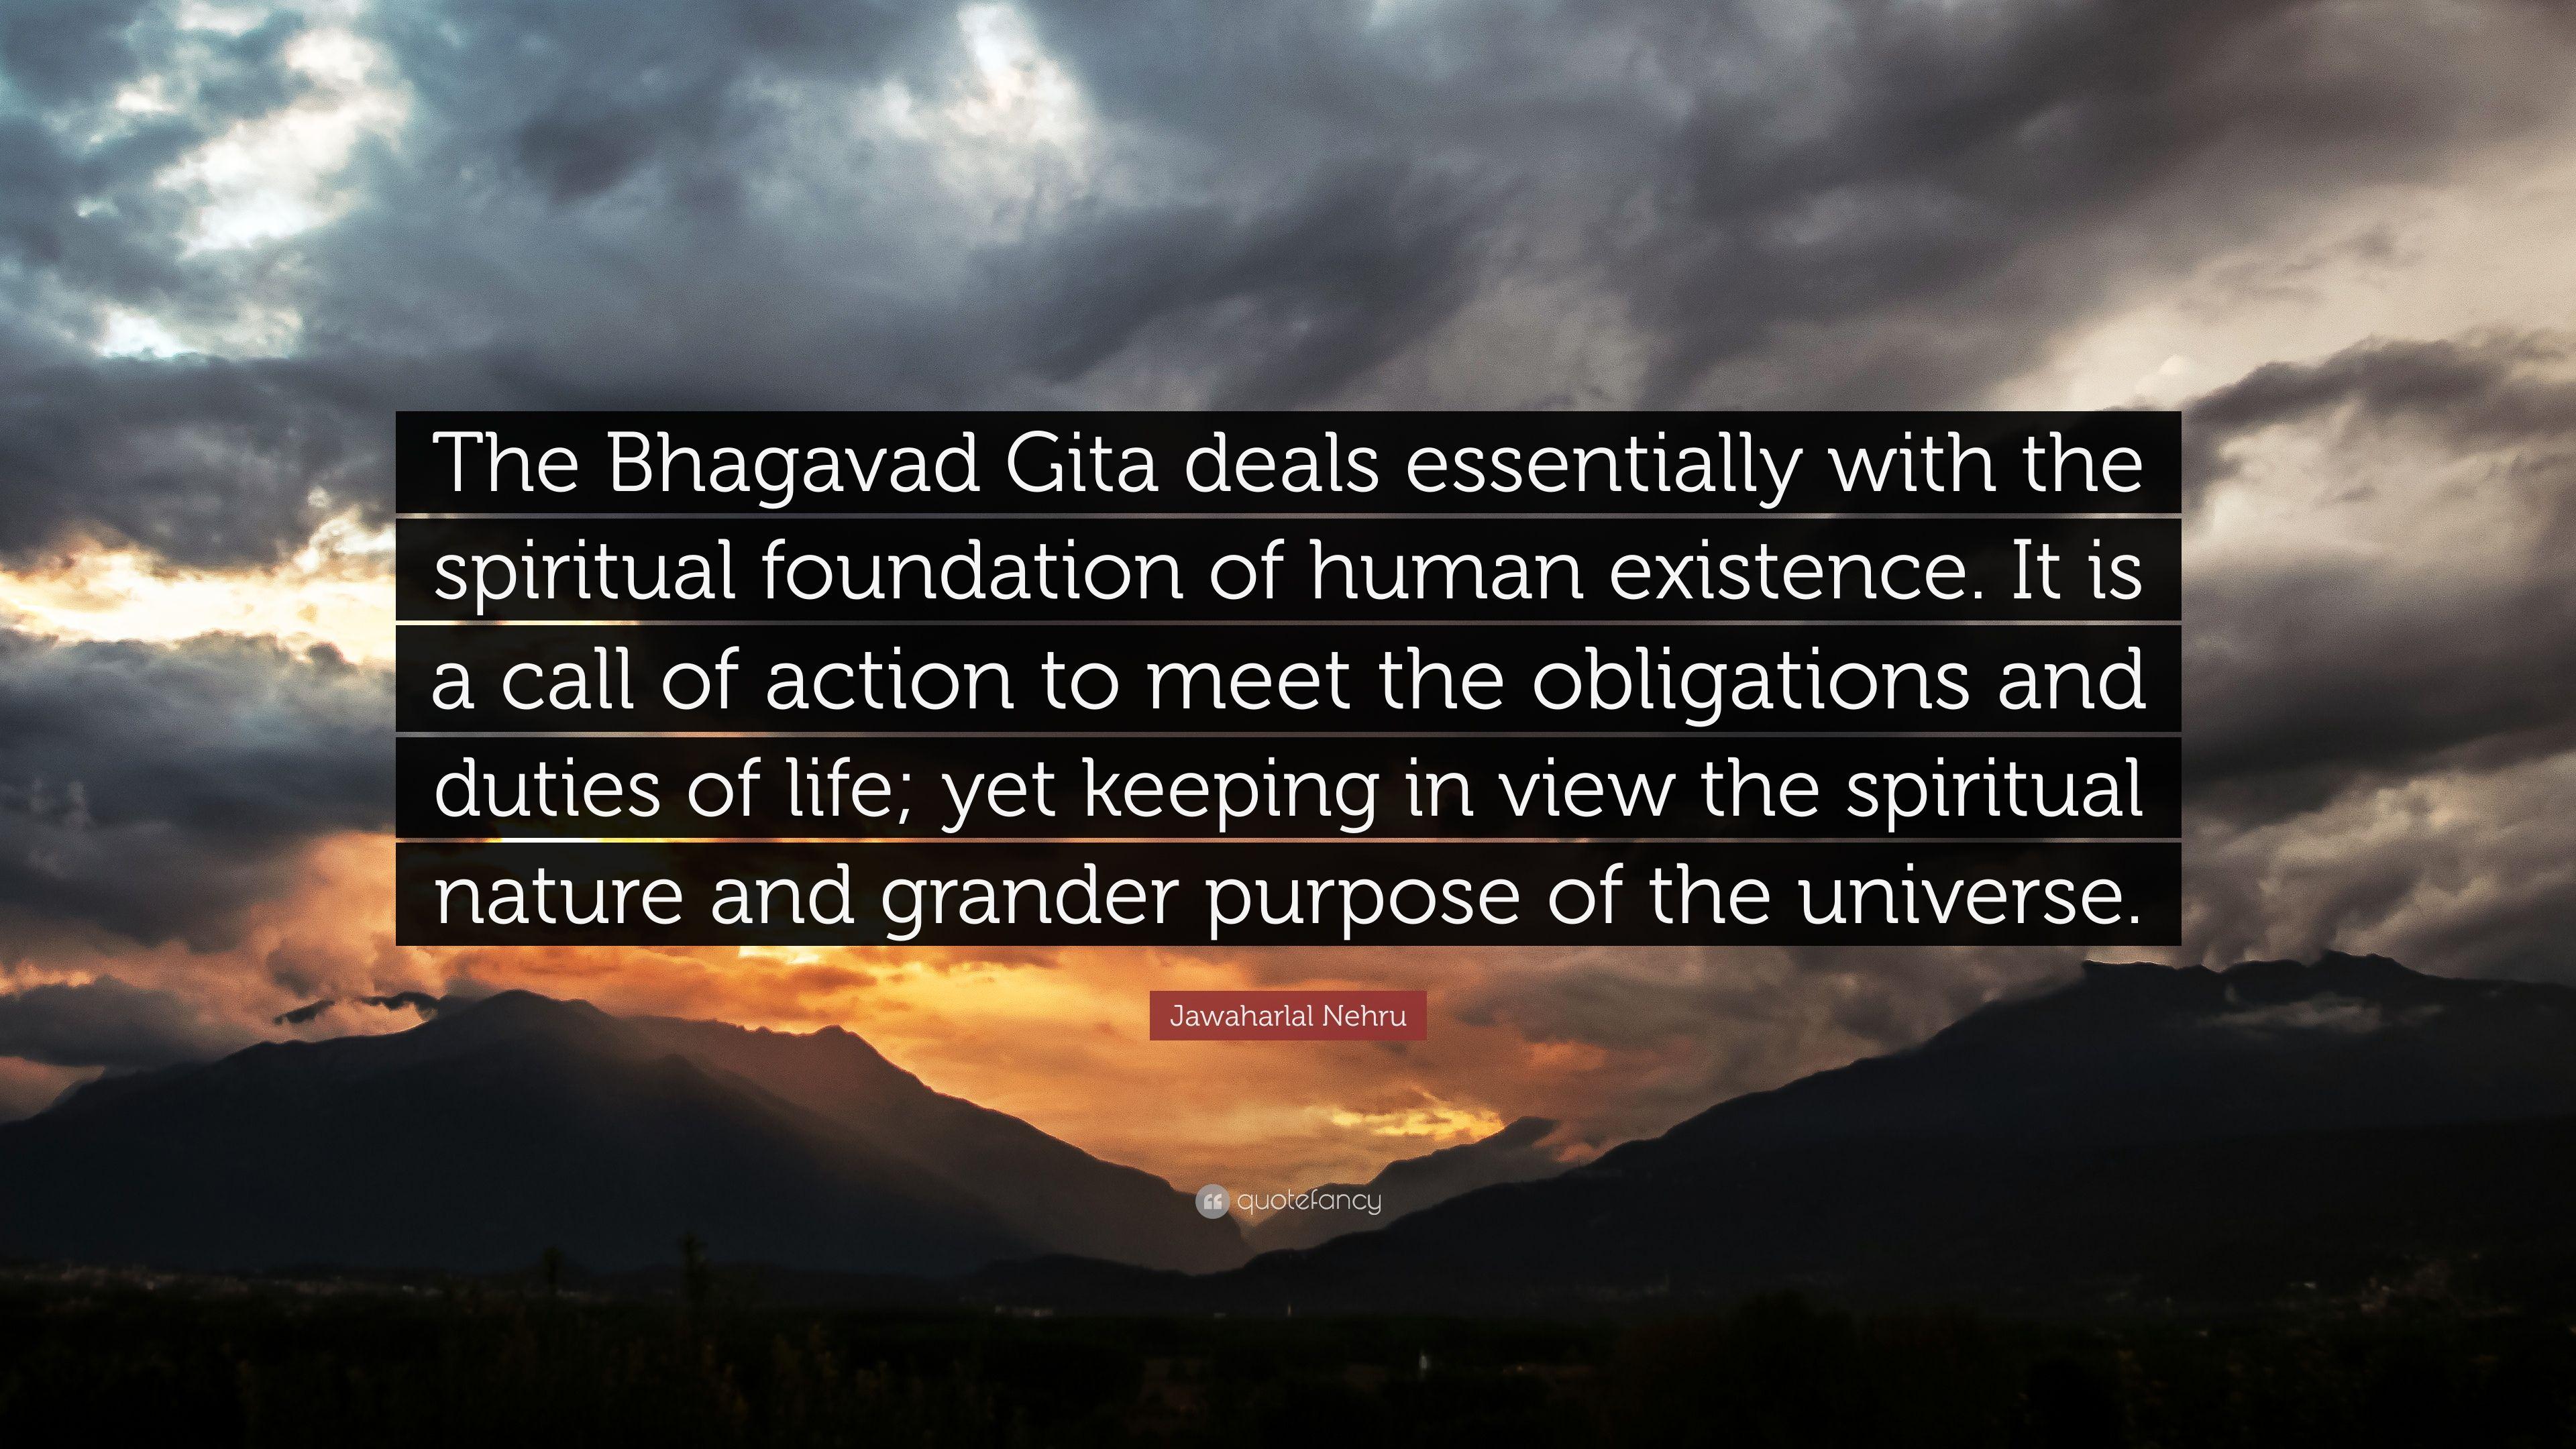 Jawaharlal Nehru Quote: “The Bhagavad Gita deals essentially